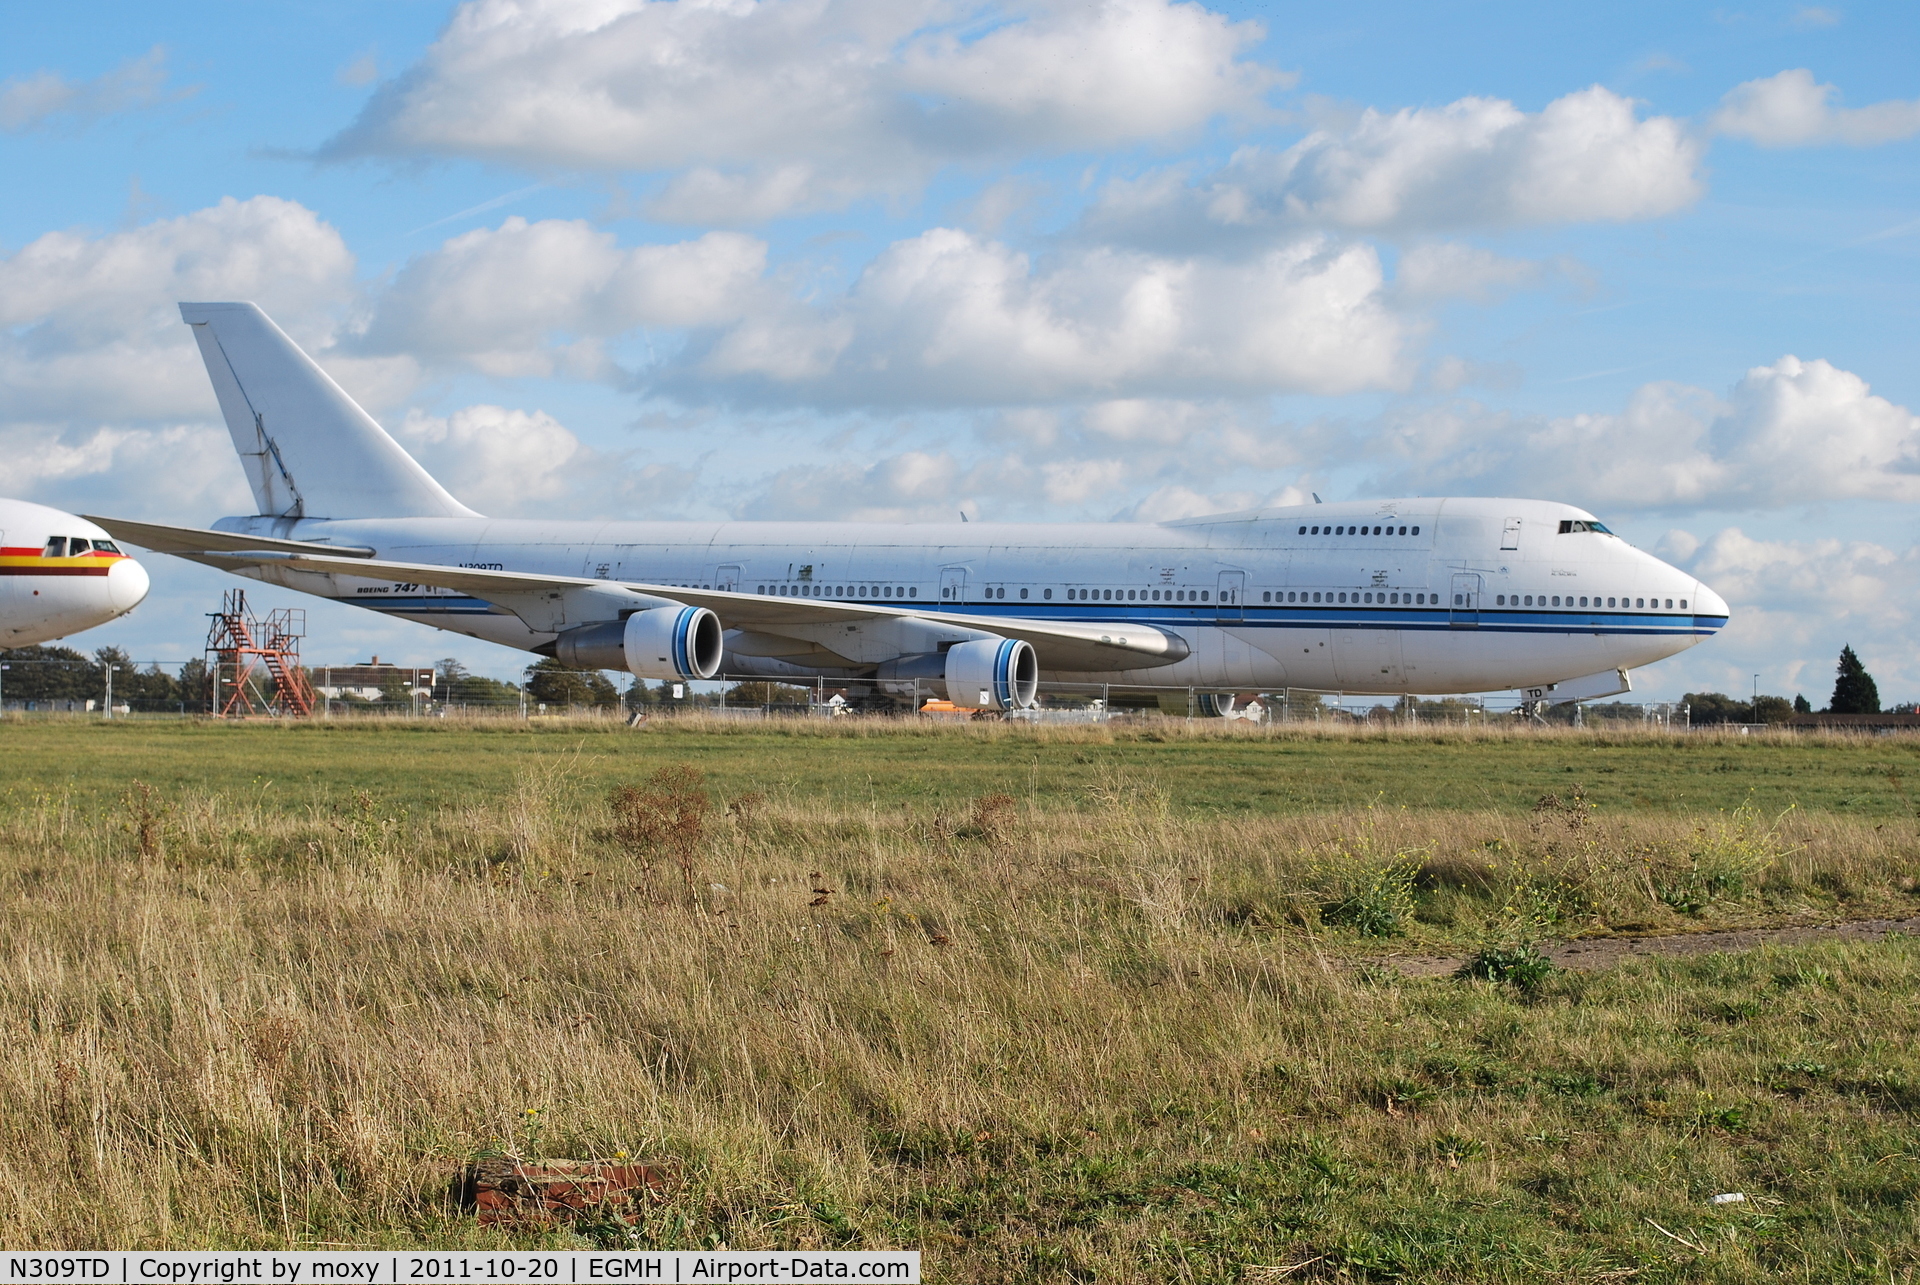 N309TD, 1981 Boeing 747-269B C/N 22740, Ex Kuwait Airways B747-269B in storage at Manston.